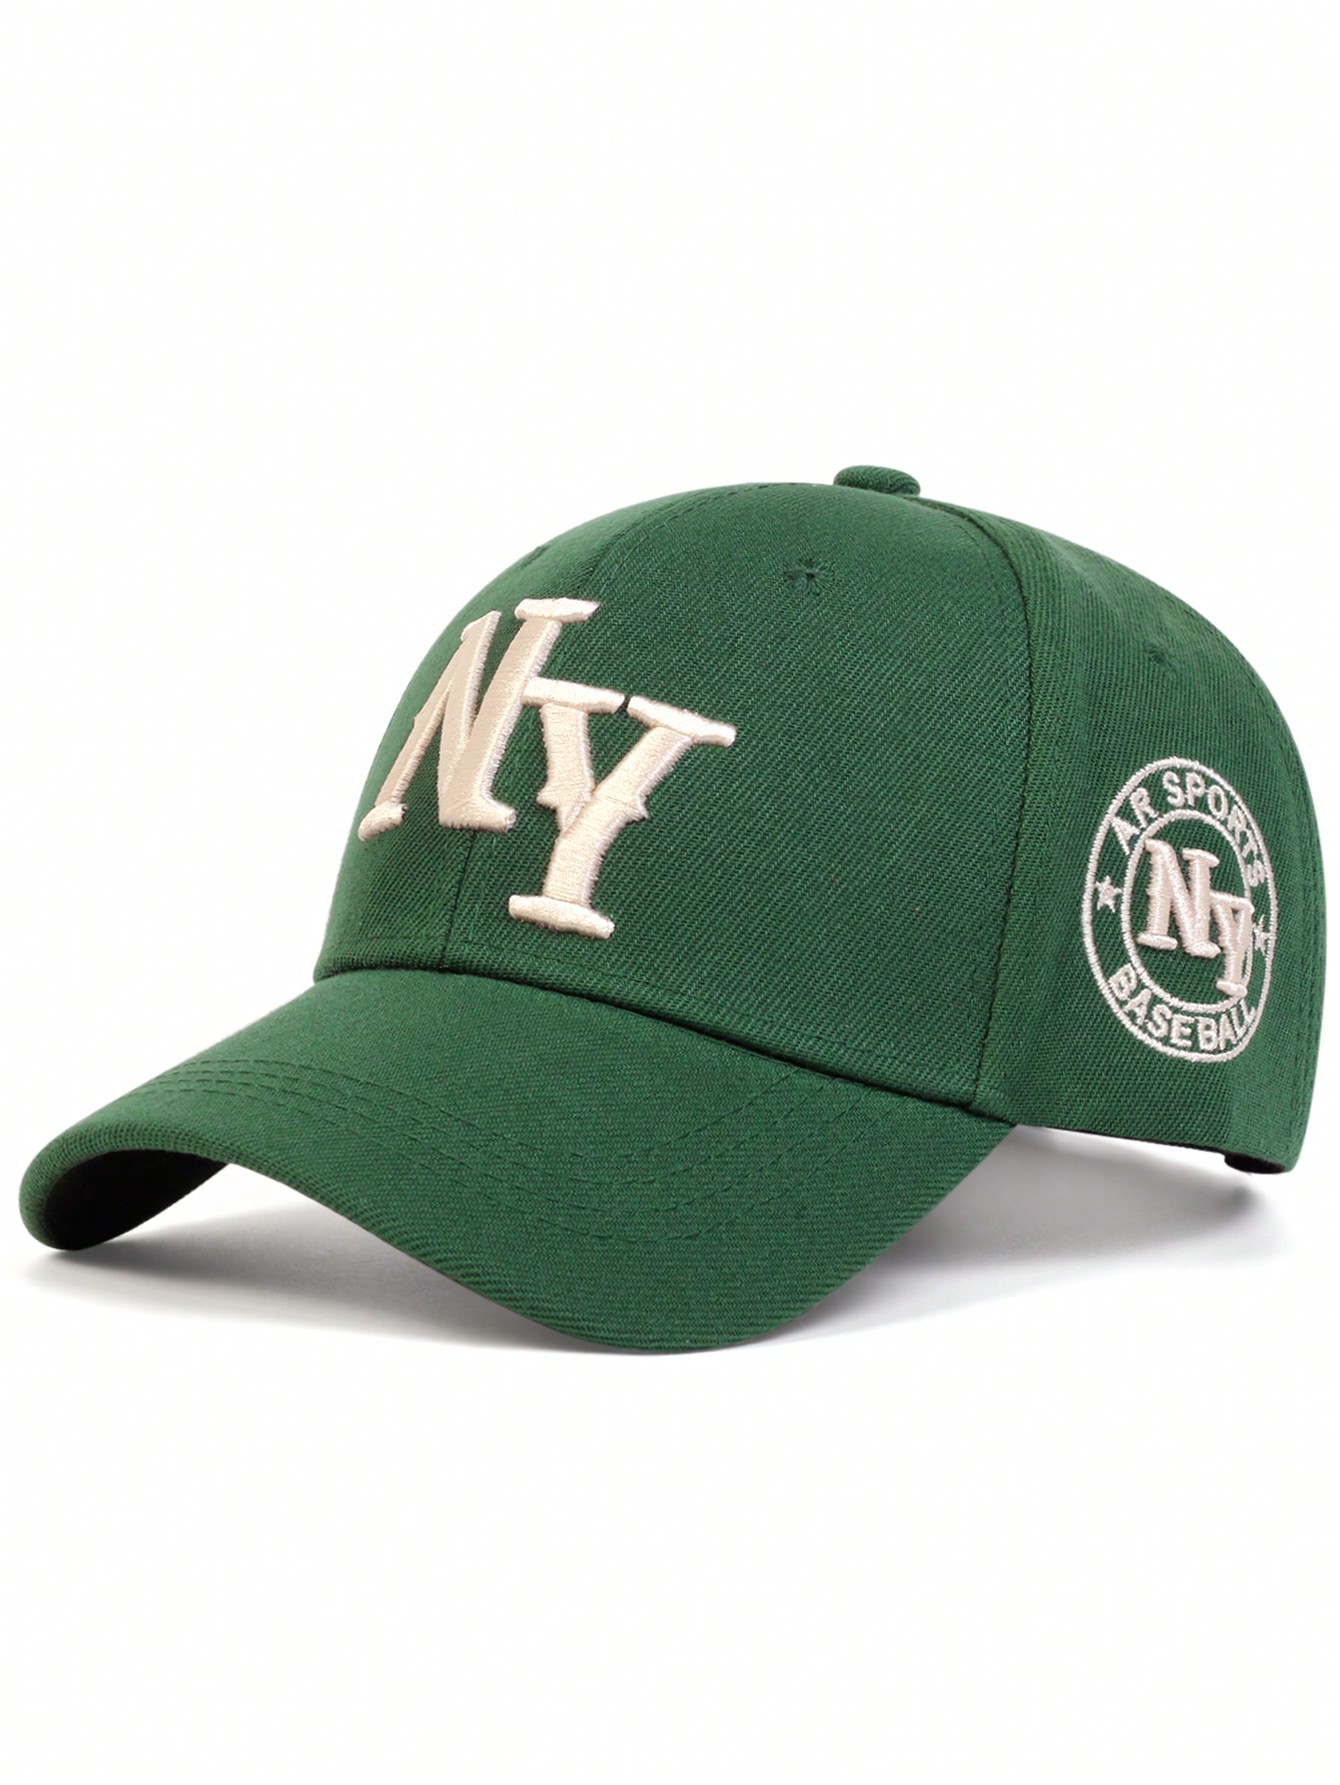 1 шт. мужская бейсболка с вышивкой букв «Нью-Йорк», зеленый бейсболка с вышивкой букв женская летняя бейсболка уличная корейская ретро мягкая кепка